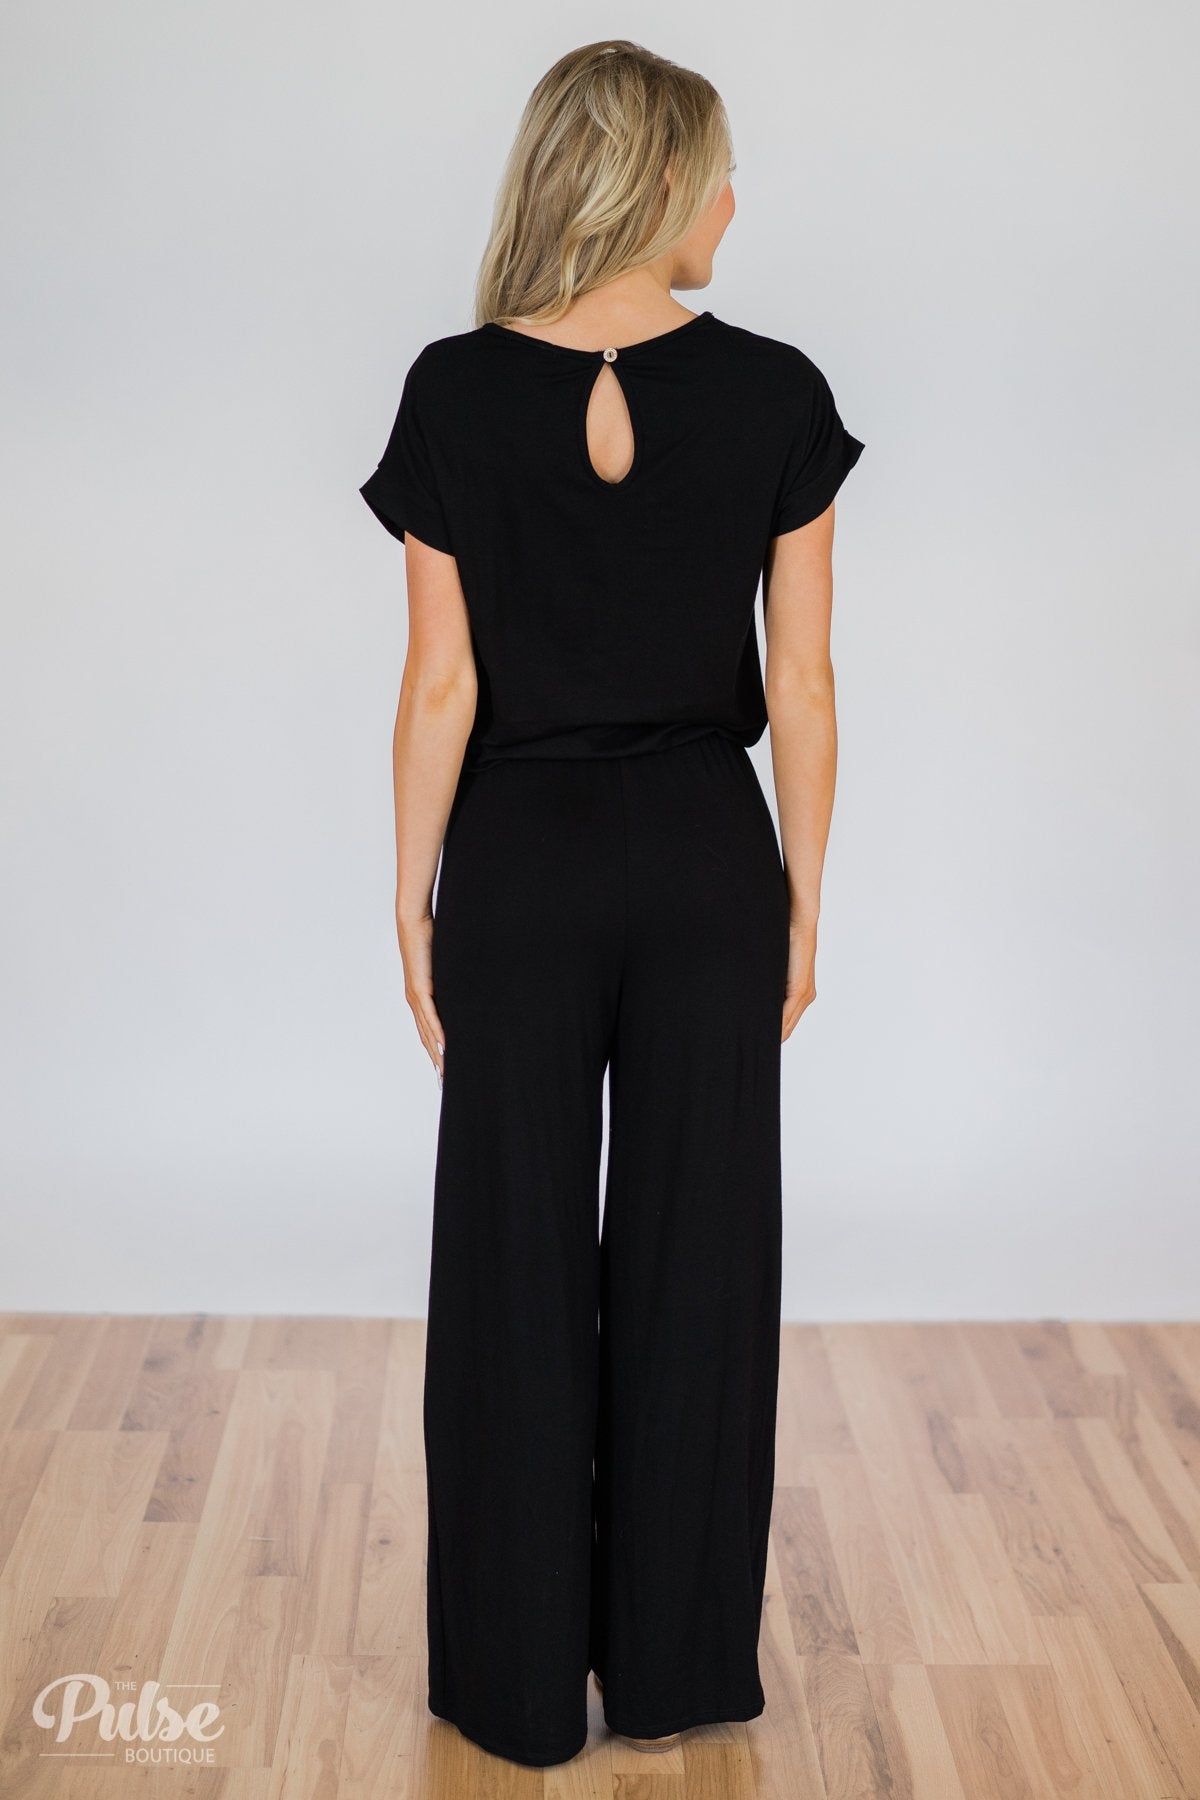 Short Sleeve Jumpsuit- Black – The Pulse Boutique